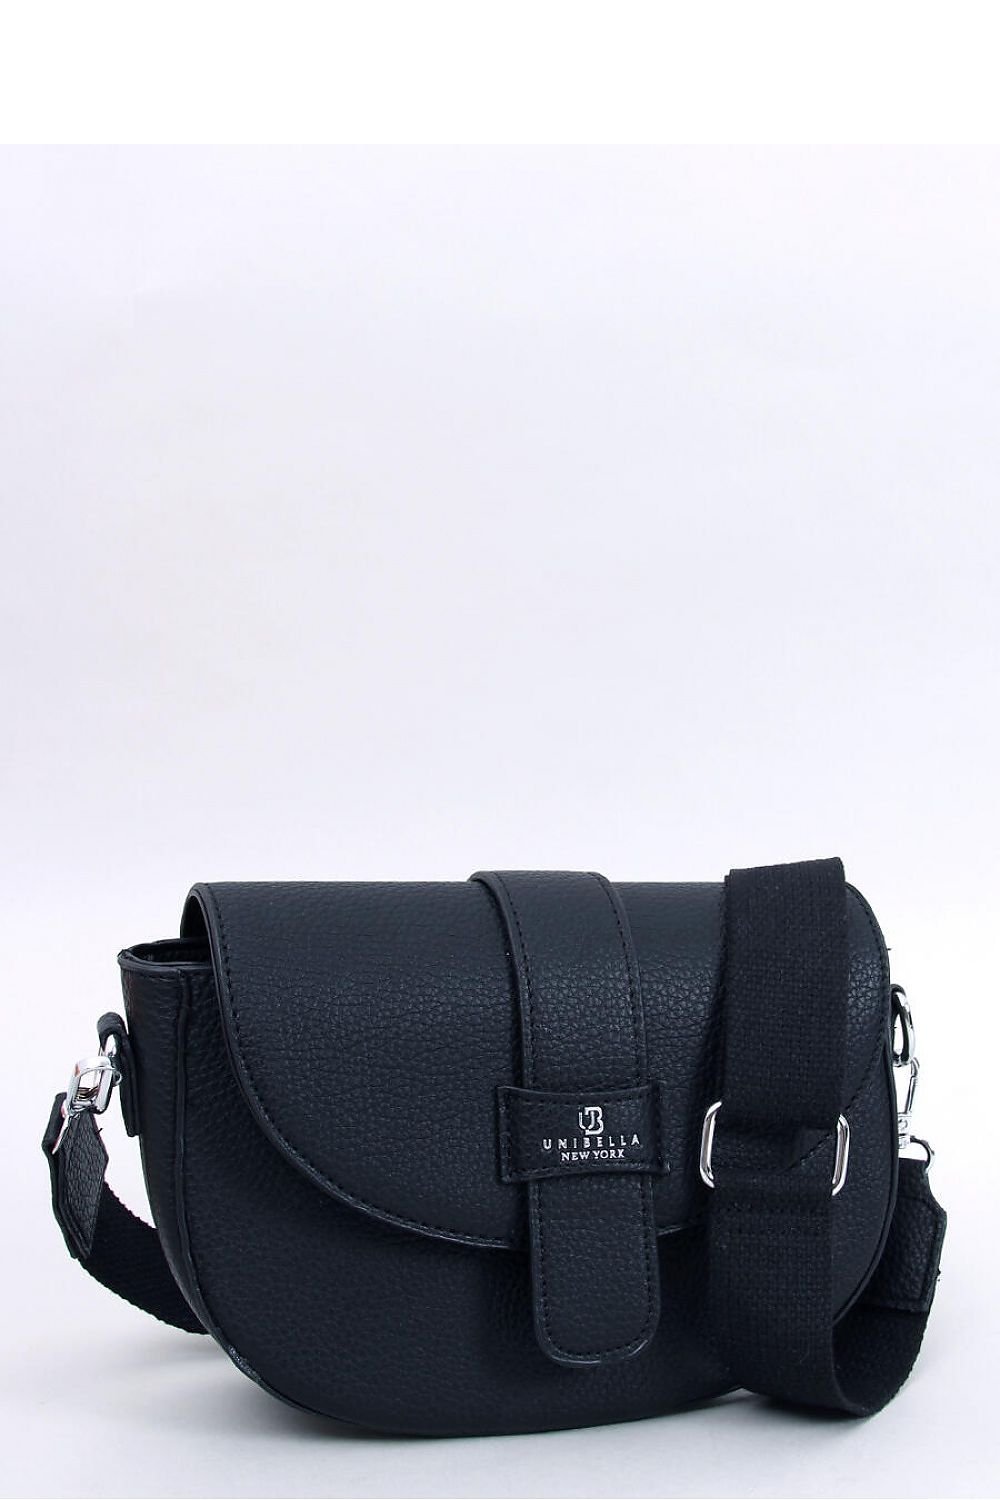 Black messenger bag with detachable adjustable strap